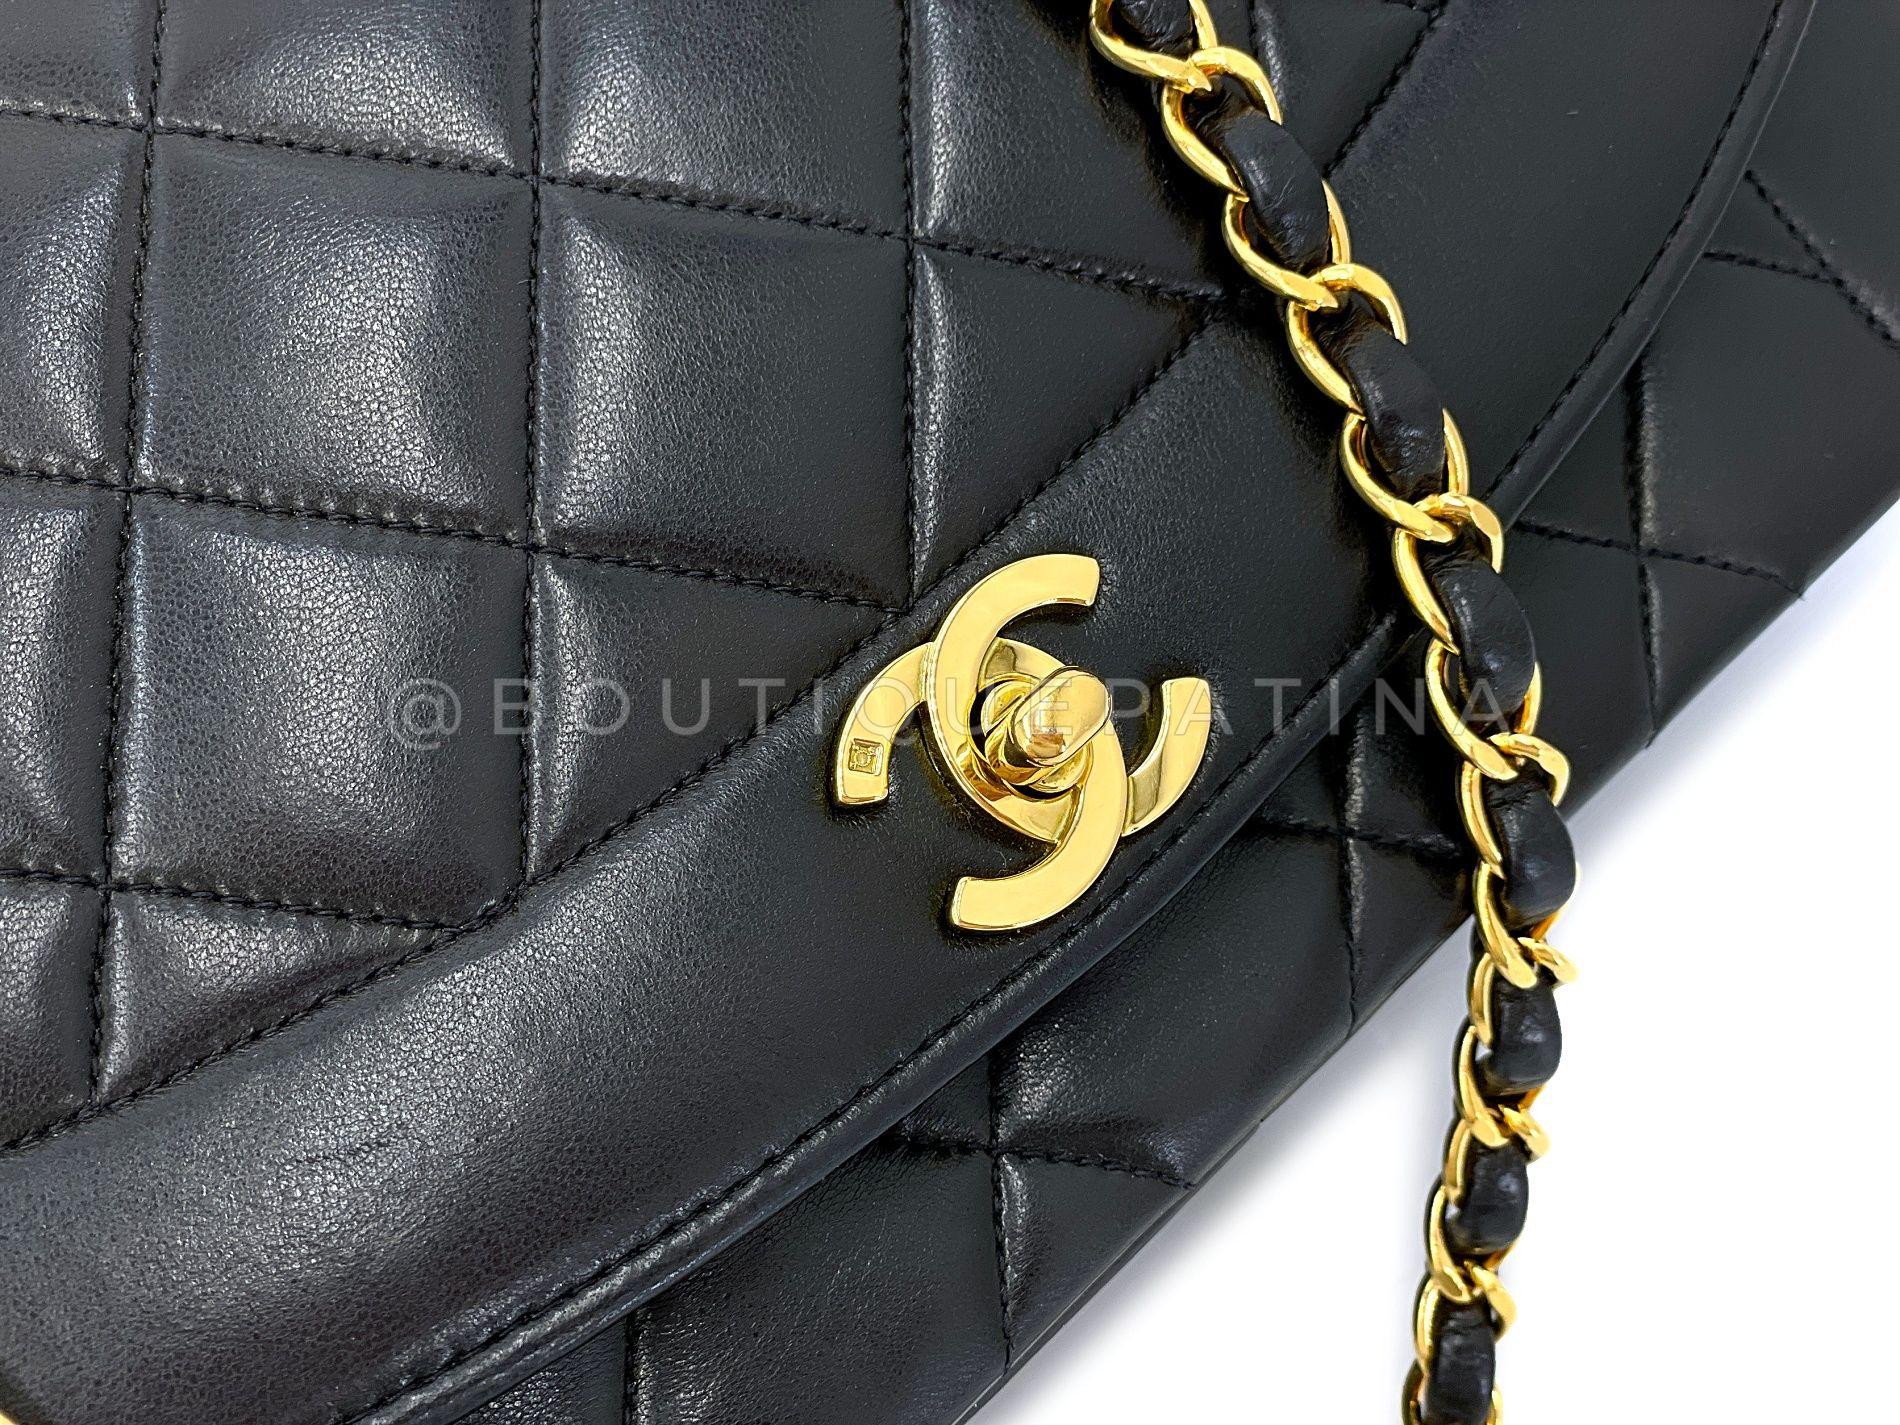 Chanel 1994 Vintage Black Lambskin Medium Diana Flap Bag 24k GHW 64411 For Sale 4